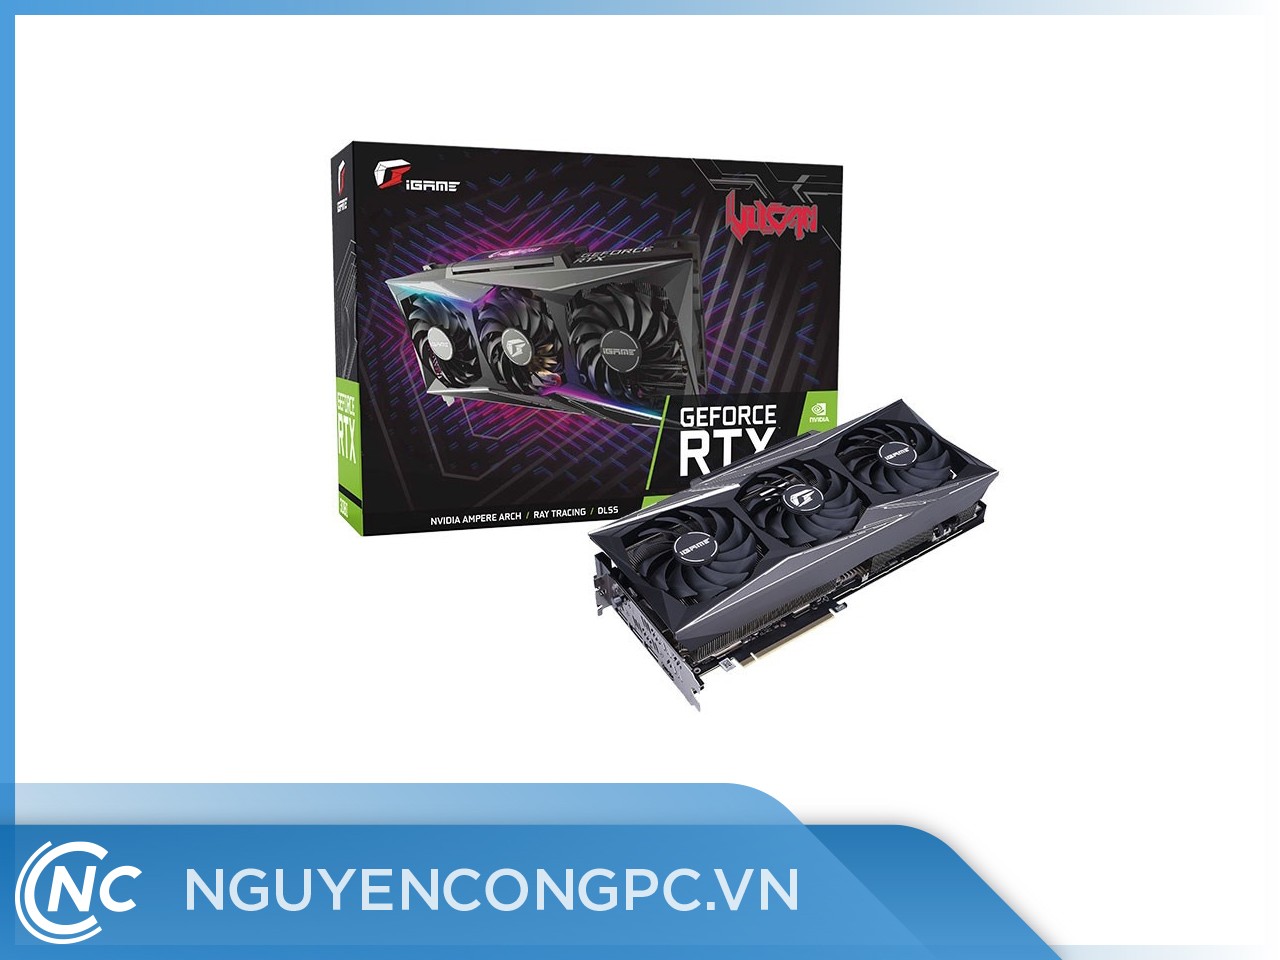 Card Màn Hình COLORFUL iGame GeForce RTX 3090 Vulcan 24G-V OC ( 3FAN) cao cấp